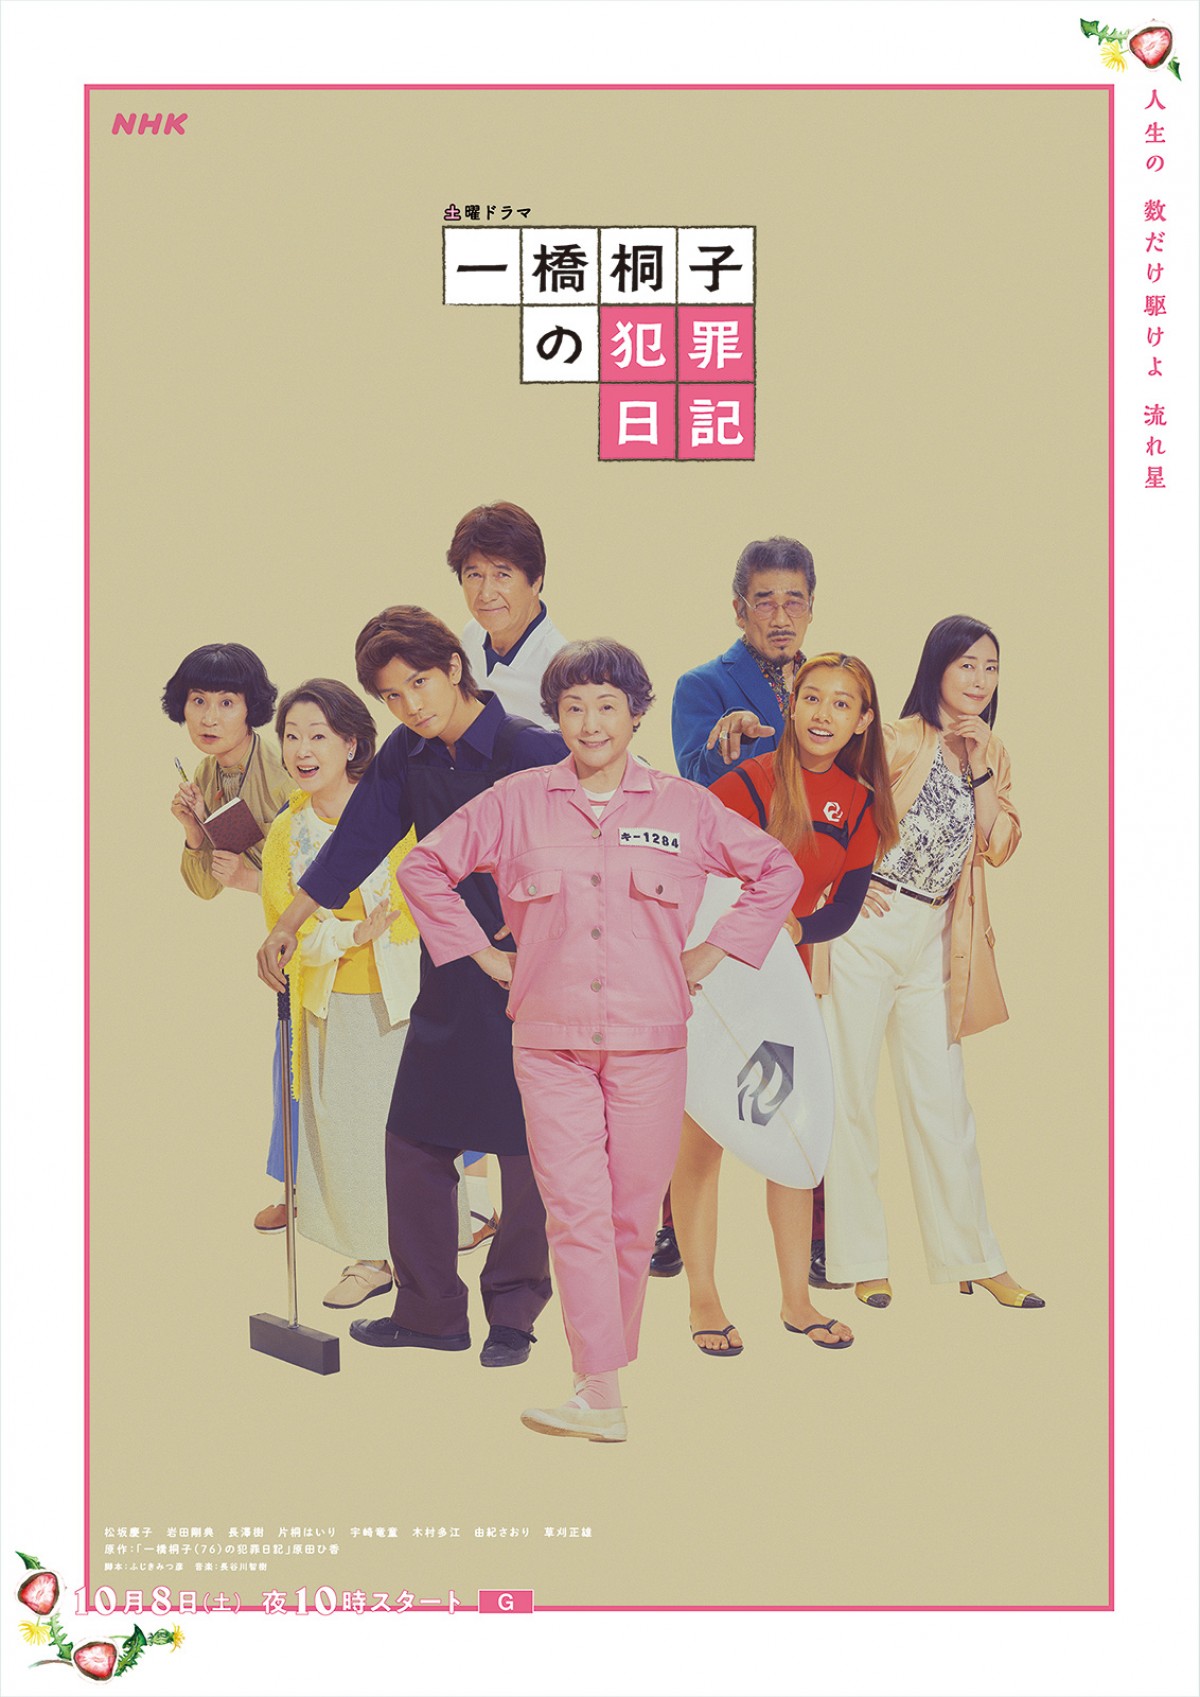 ドラマ『一橋桐子の犯罪日記』新ポスタービジュアル「明日へのマーチバージョン」